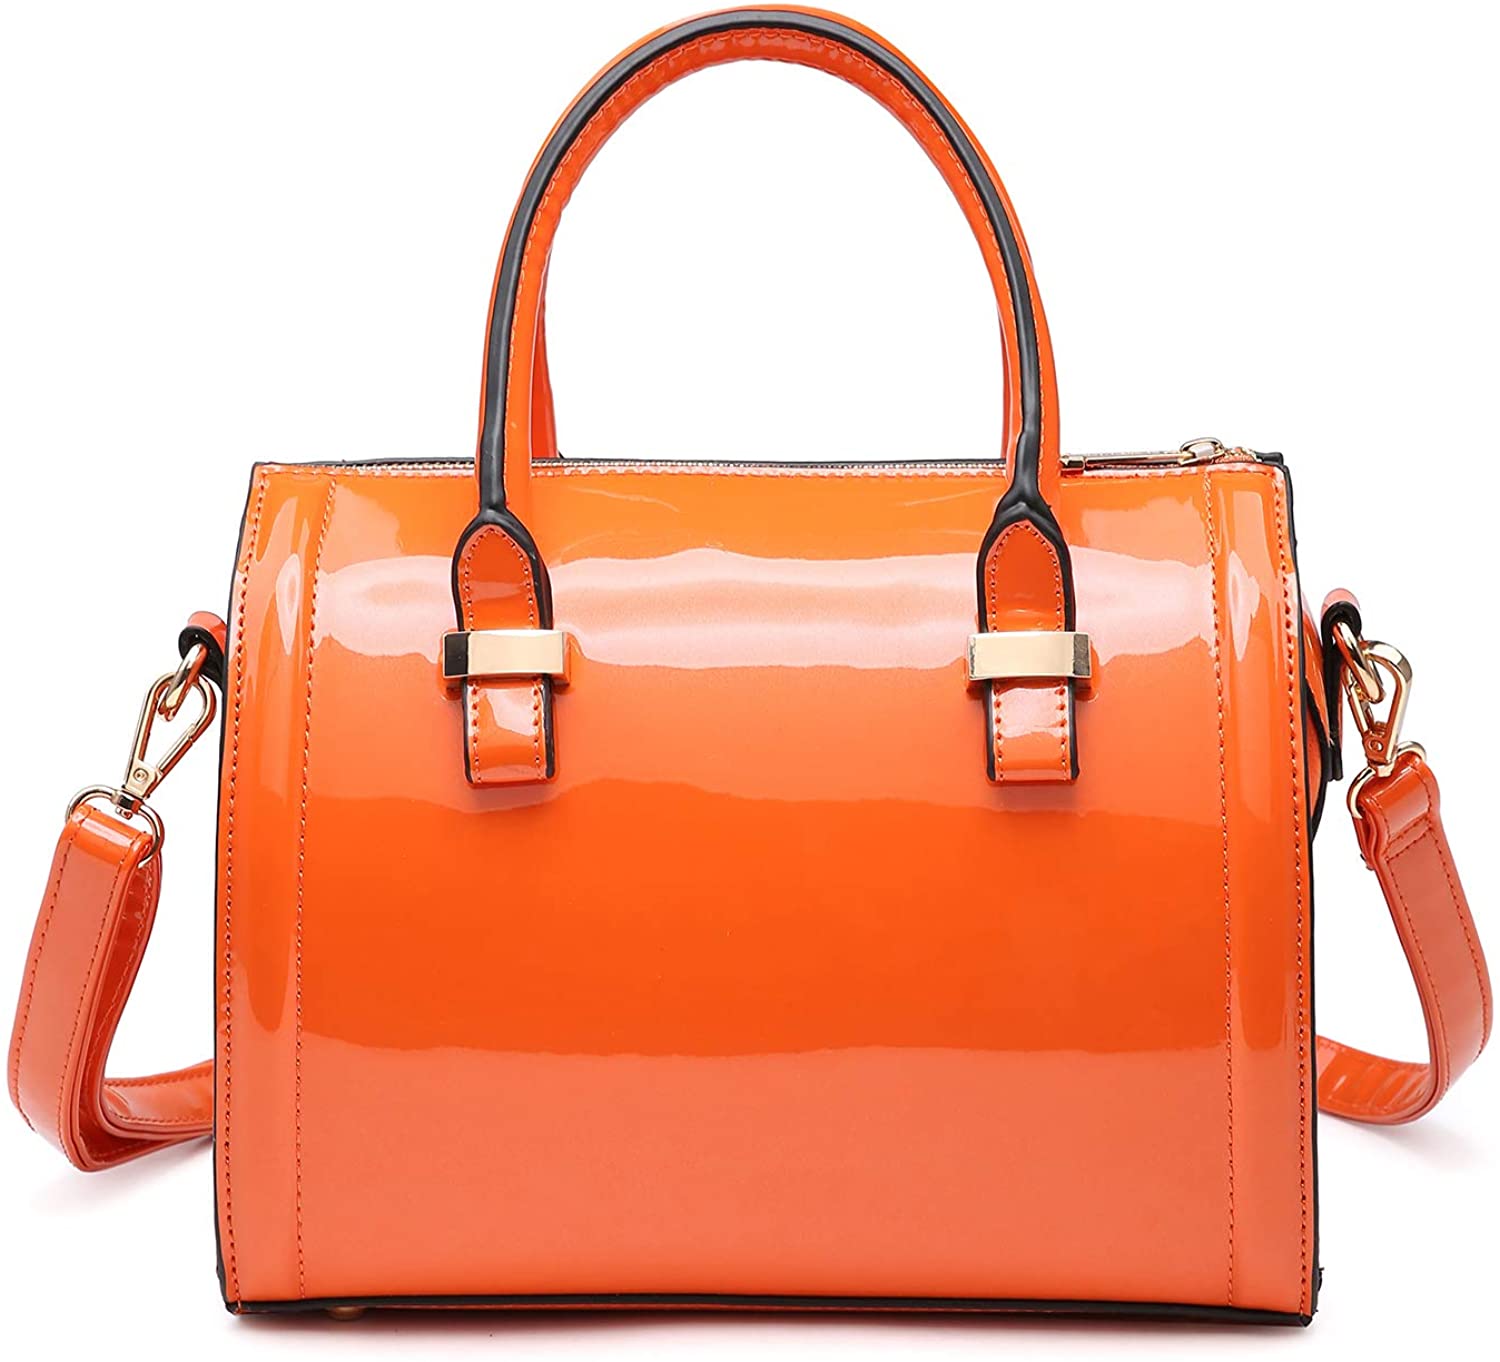 Shiny Patent Faux Leather Handbags Barrel Top Handle Purse Satchel Bag Shoulder Bag for Women 